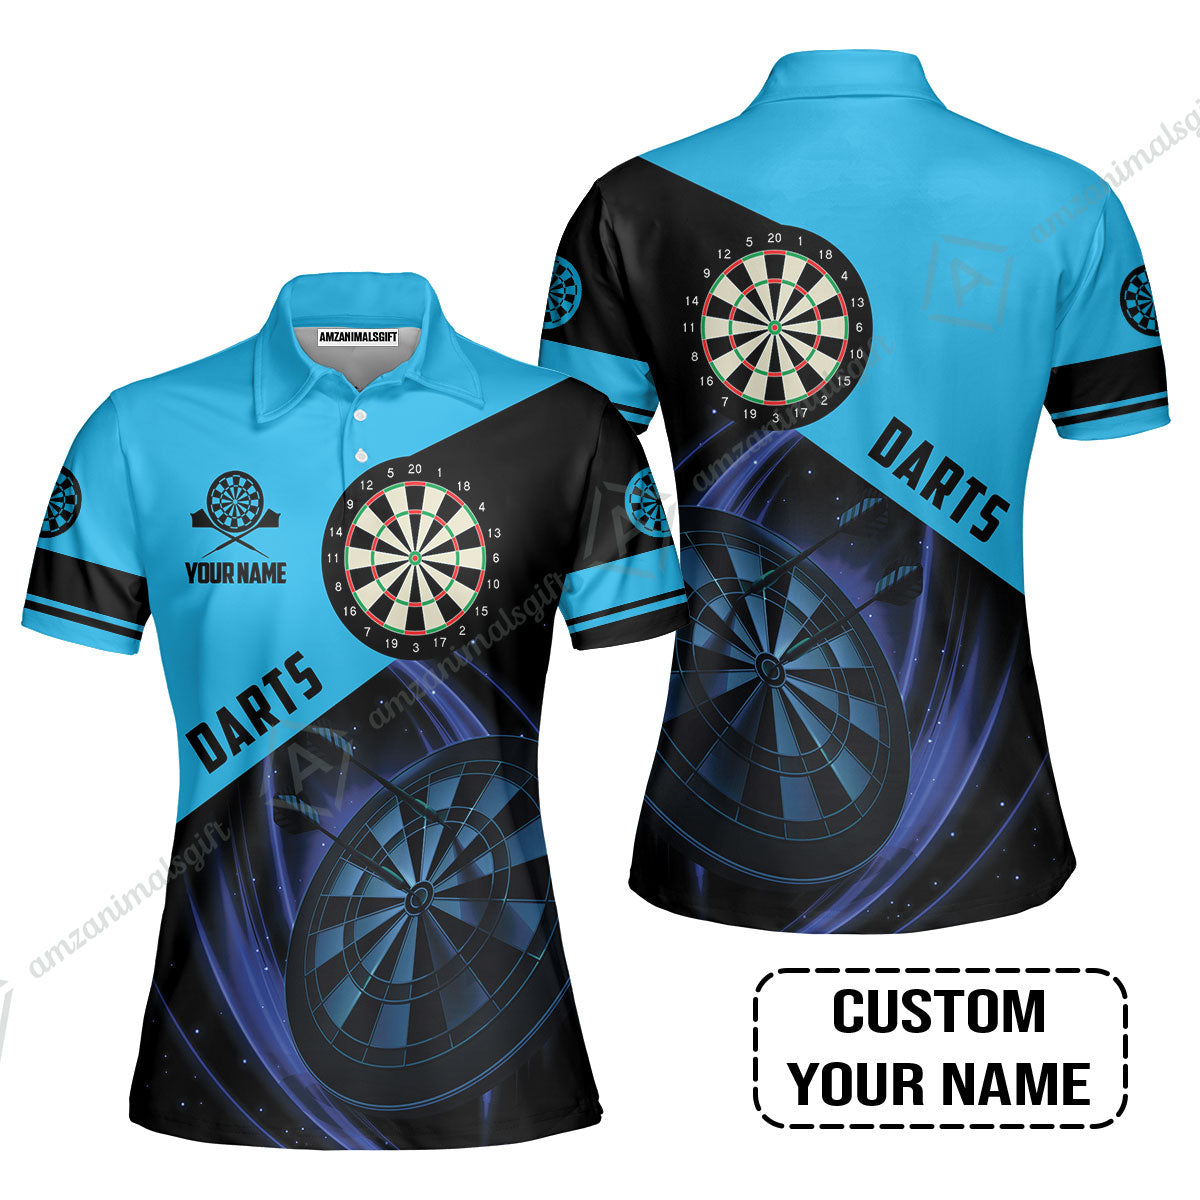 Customized Name Darts Women Polo Shirt, Dartboard Personalized Name Blue Darts Team Women Polo Shirt